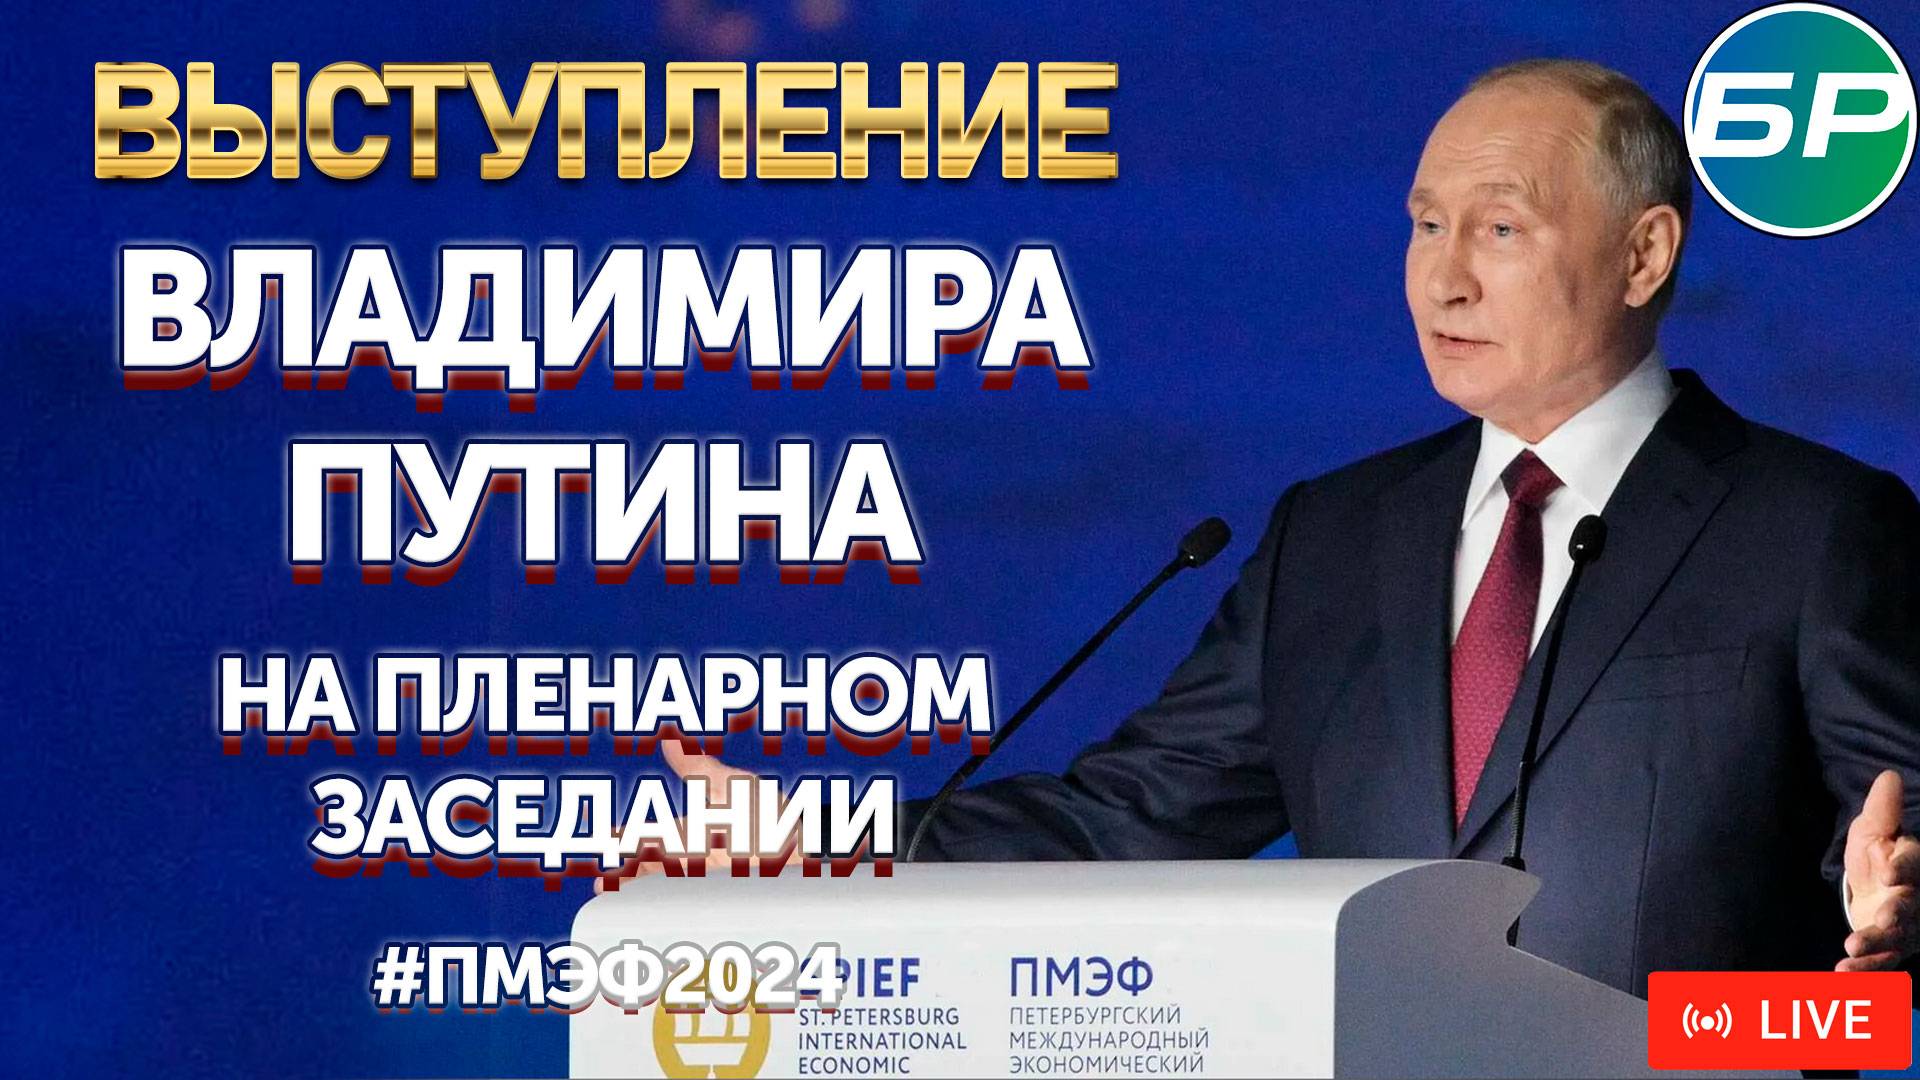 Пленарное заседание с участием Владимира Путина #ПМЭФ2024 | ПРЯМАЯ ТРАНСЛЯЦИЯ